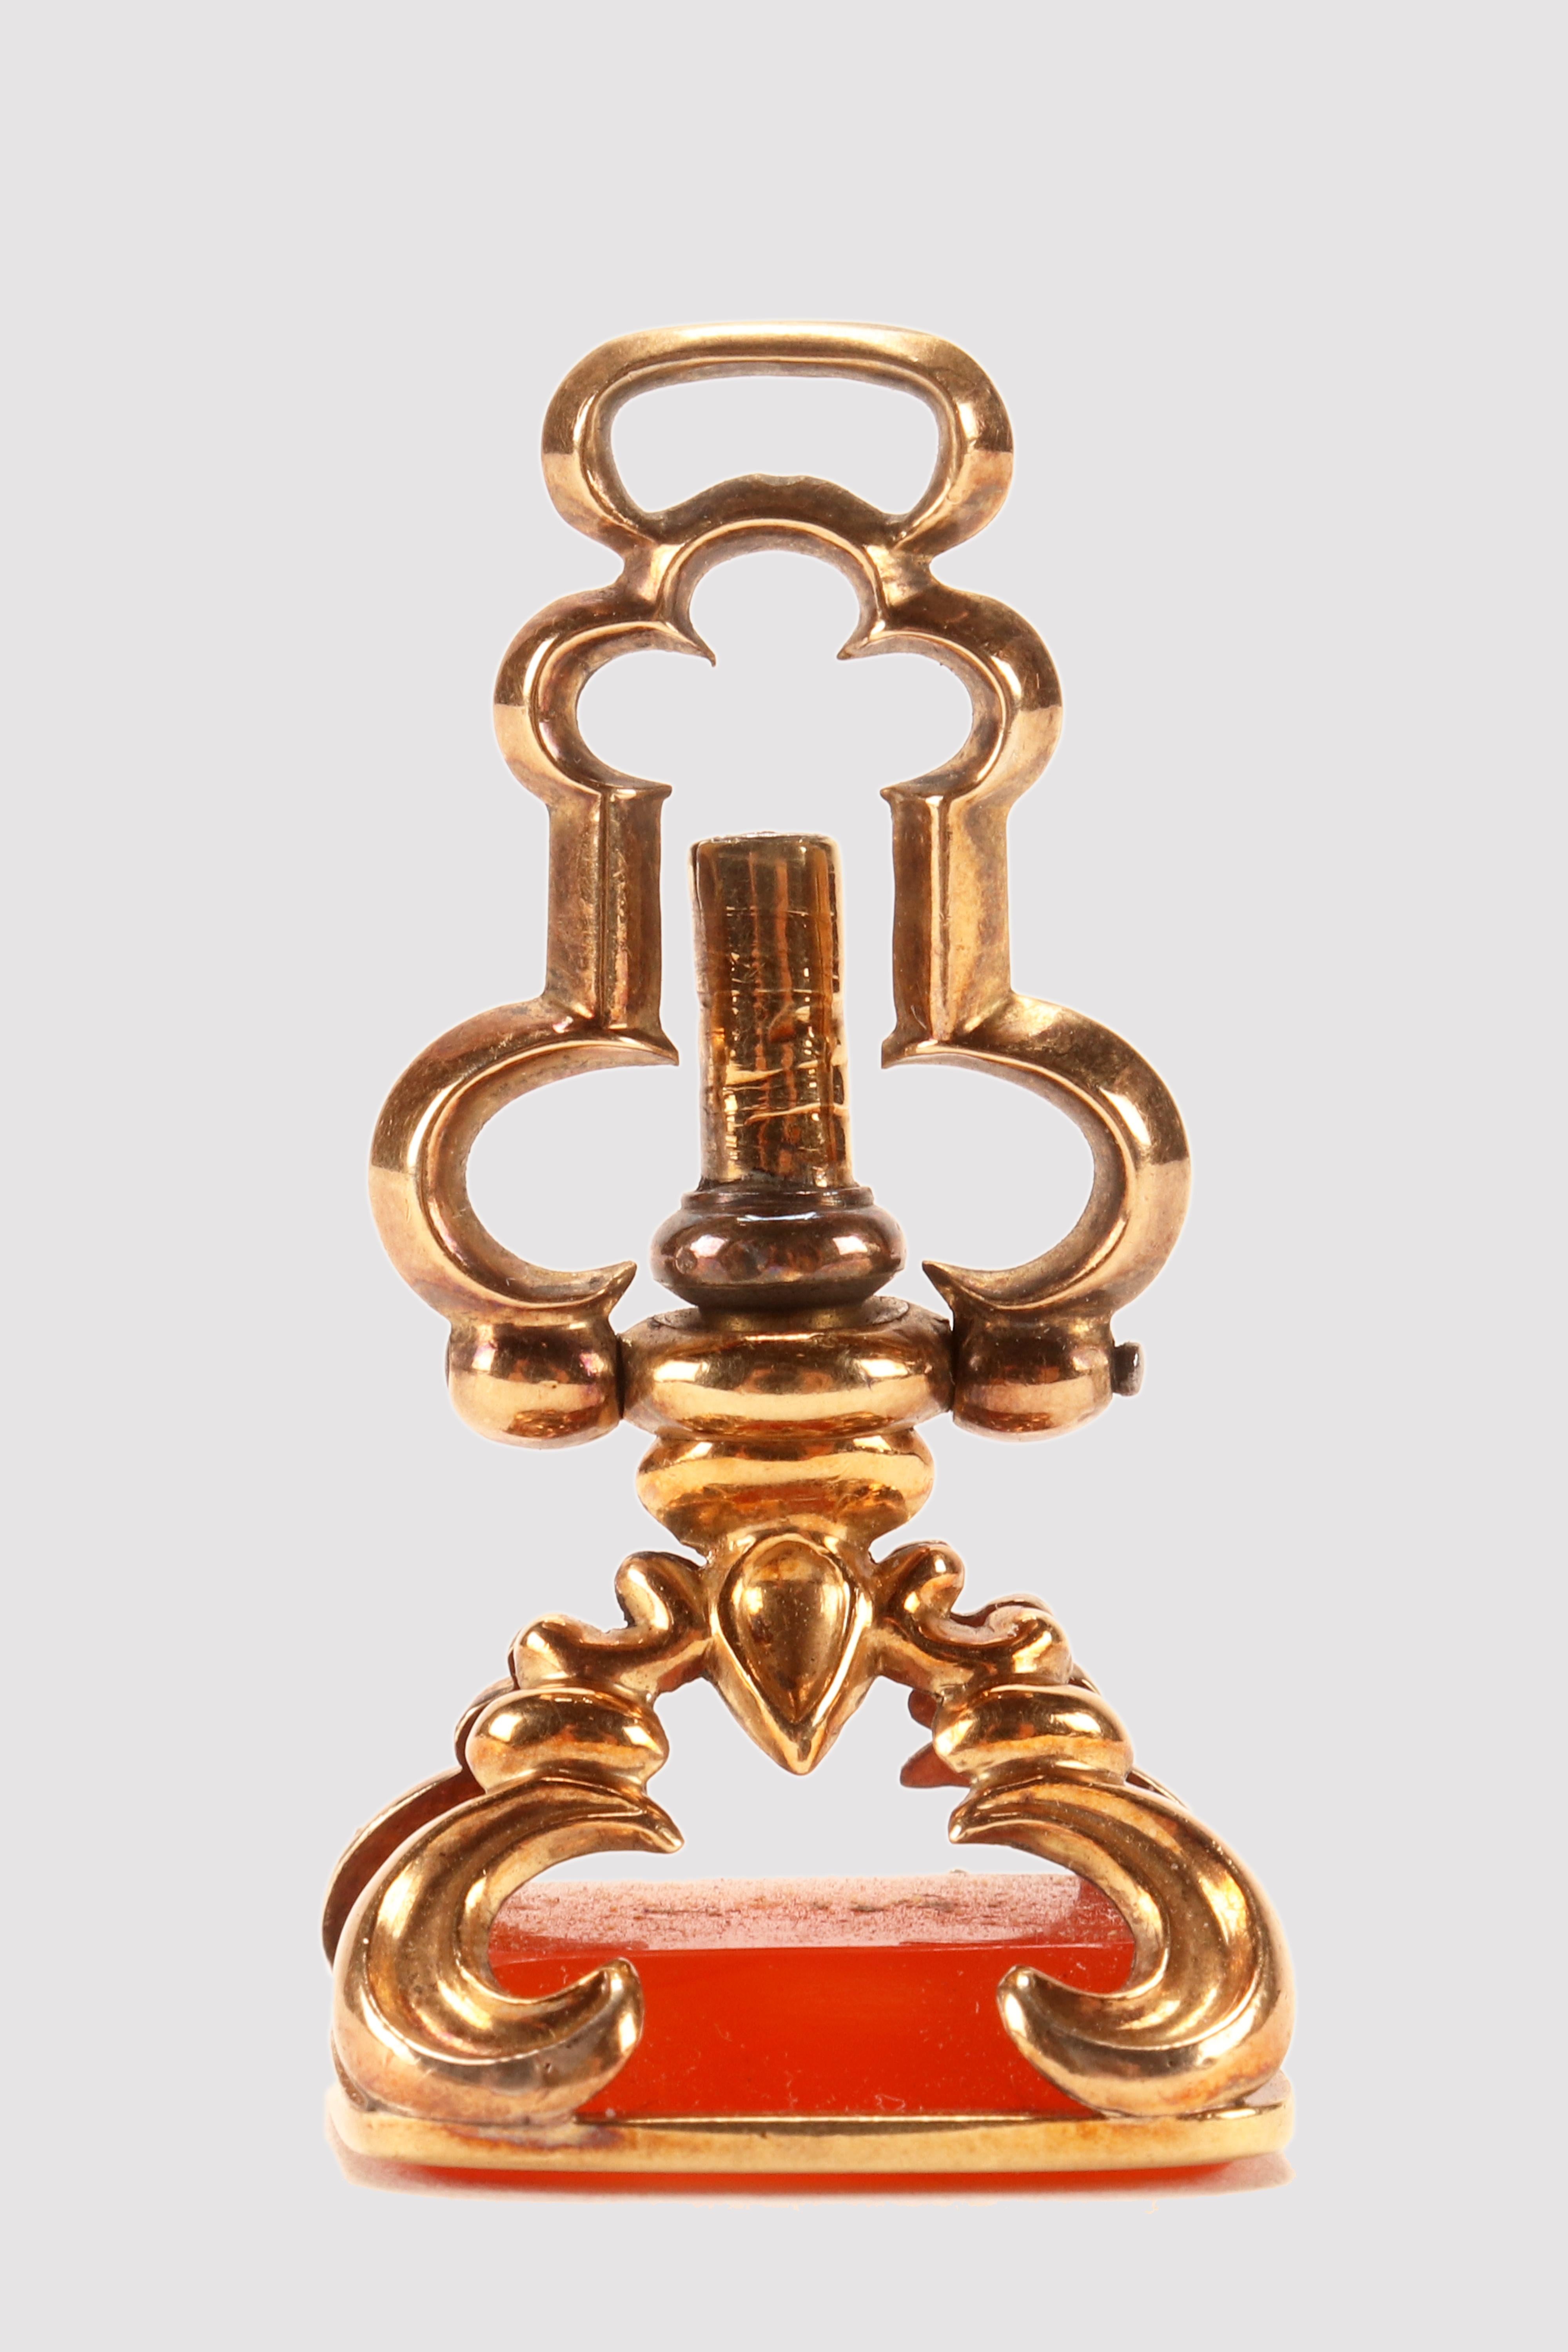 Ancienne clé de montre cachée en or 14 Kt. avec sceau en cornaline.
La matrice est en cornaline, jamais gravée, et de forme rectangulaire avec des bords biseautés. Un bandeau d'or plat embrasse le bord de la cornaline et deux joints de pont d'or au